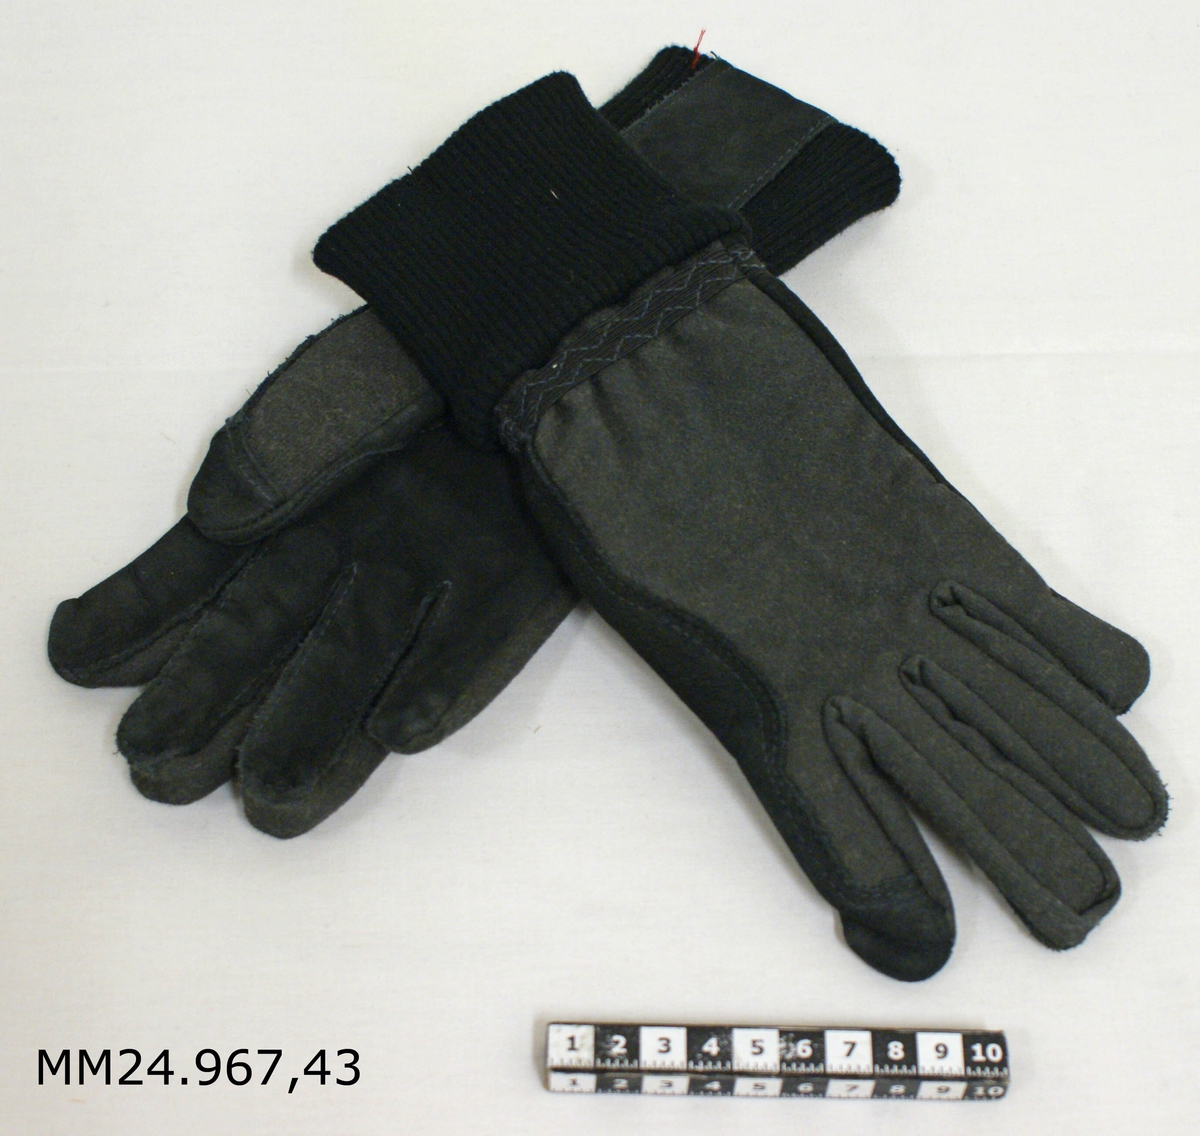 Svarta handskar med bomullsmuff och kevlarförstärkt ovandel. Femfingermodell. Inne i varje handske sitter en vit tyglapp med information om storlek, material med mera.